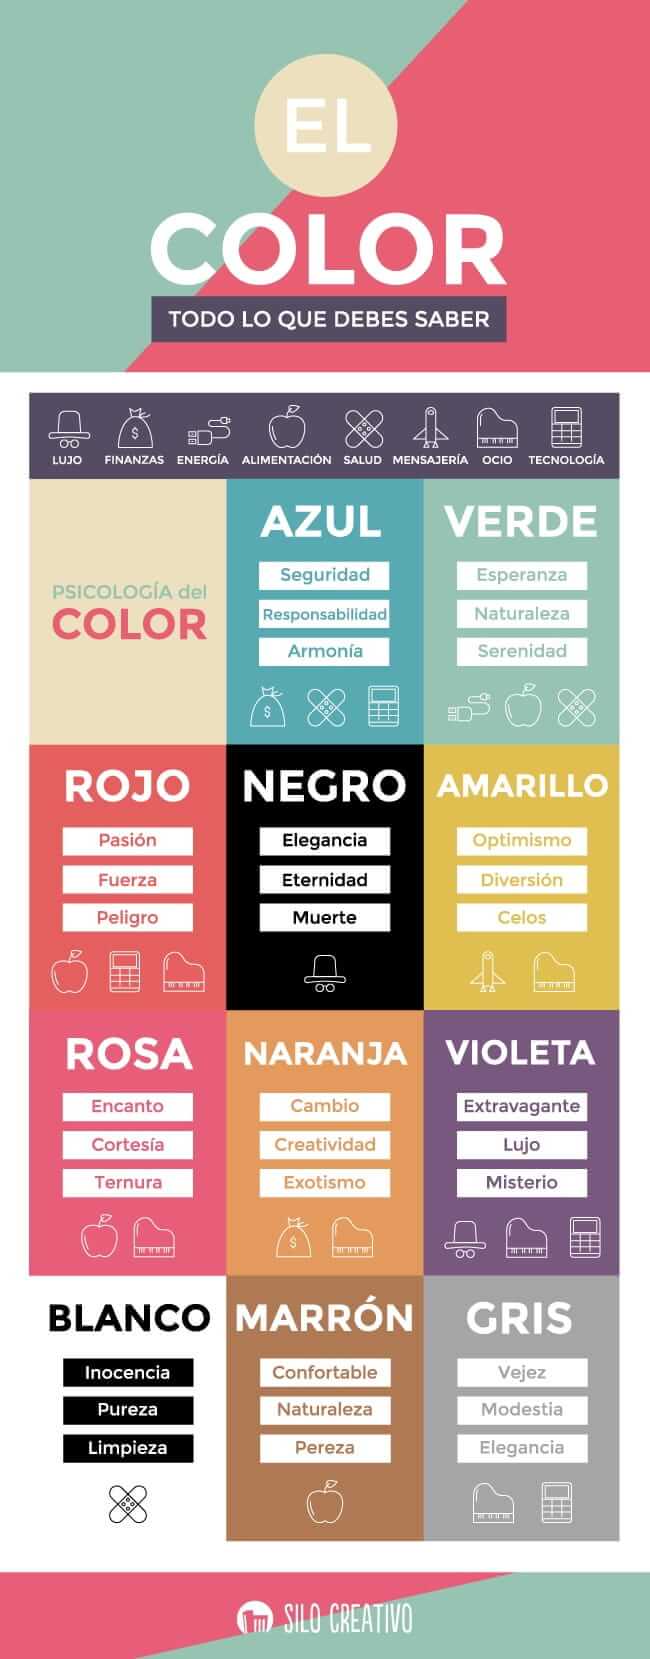 infografia sobre la psicologia del color